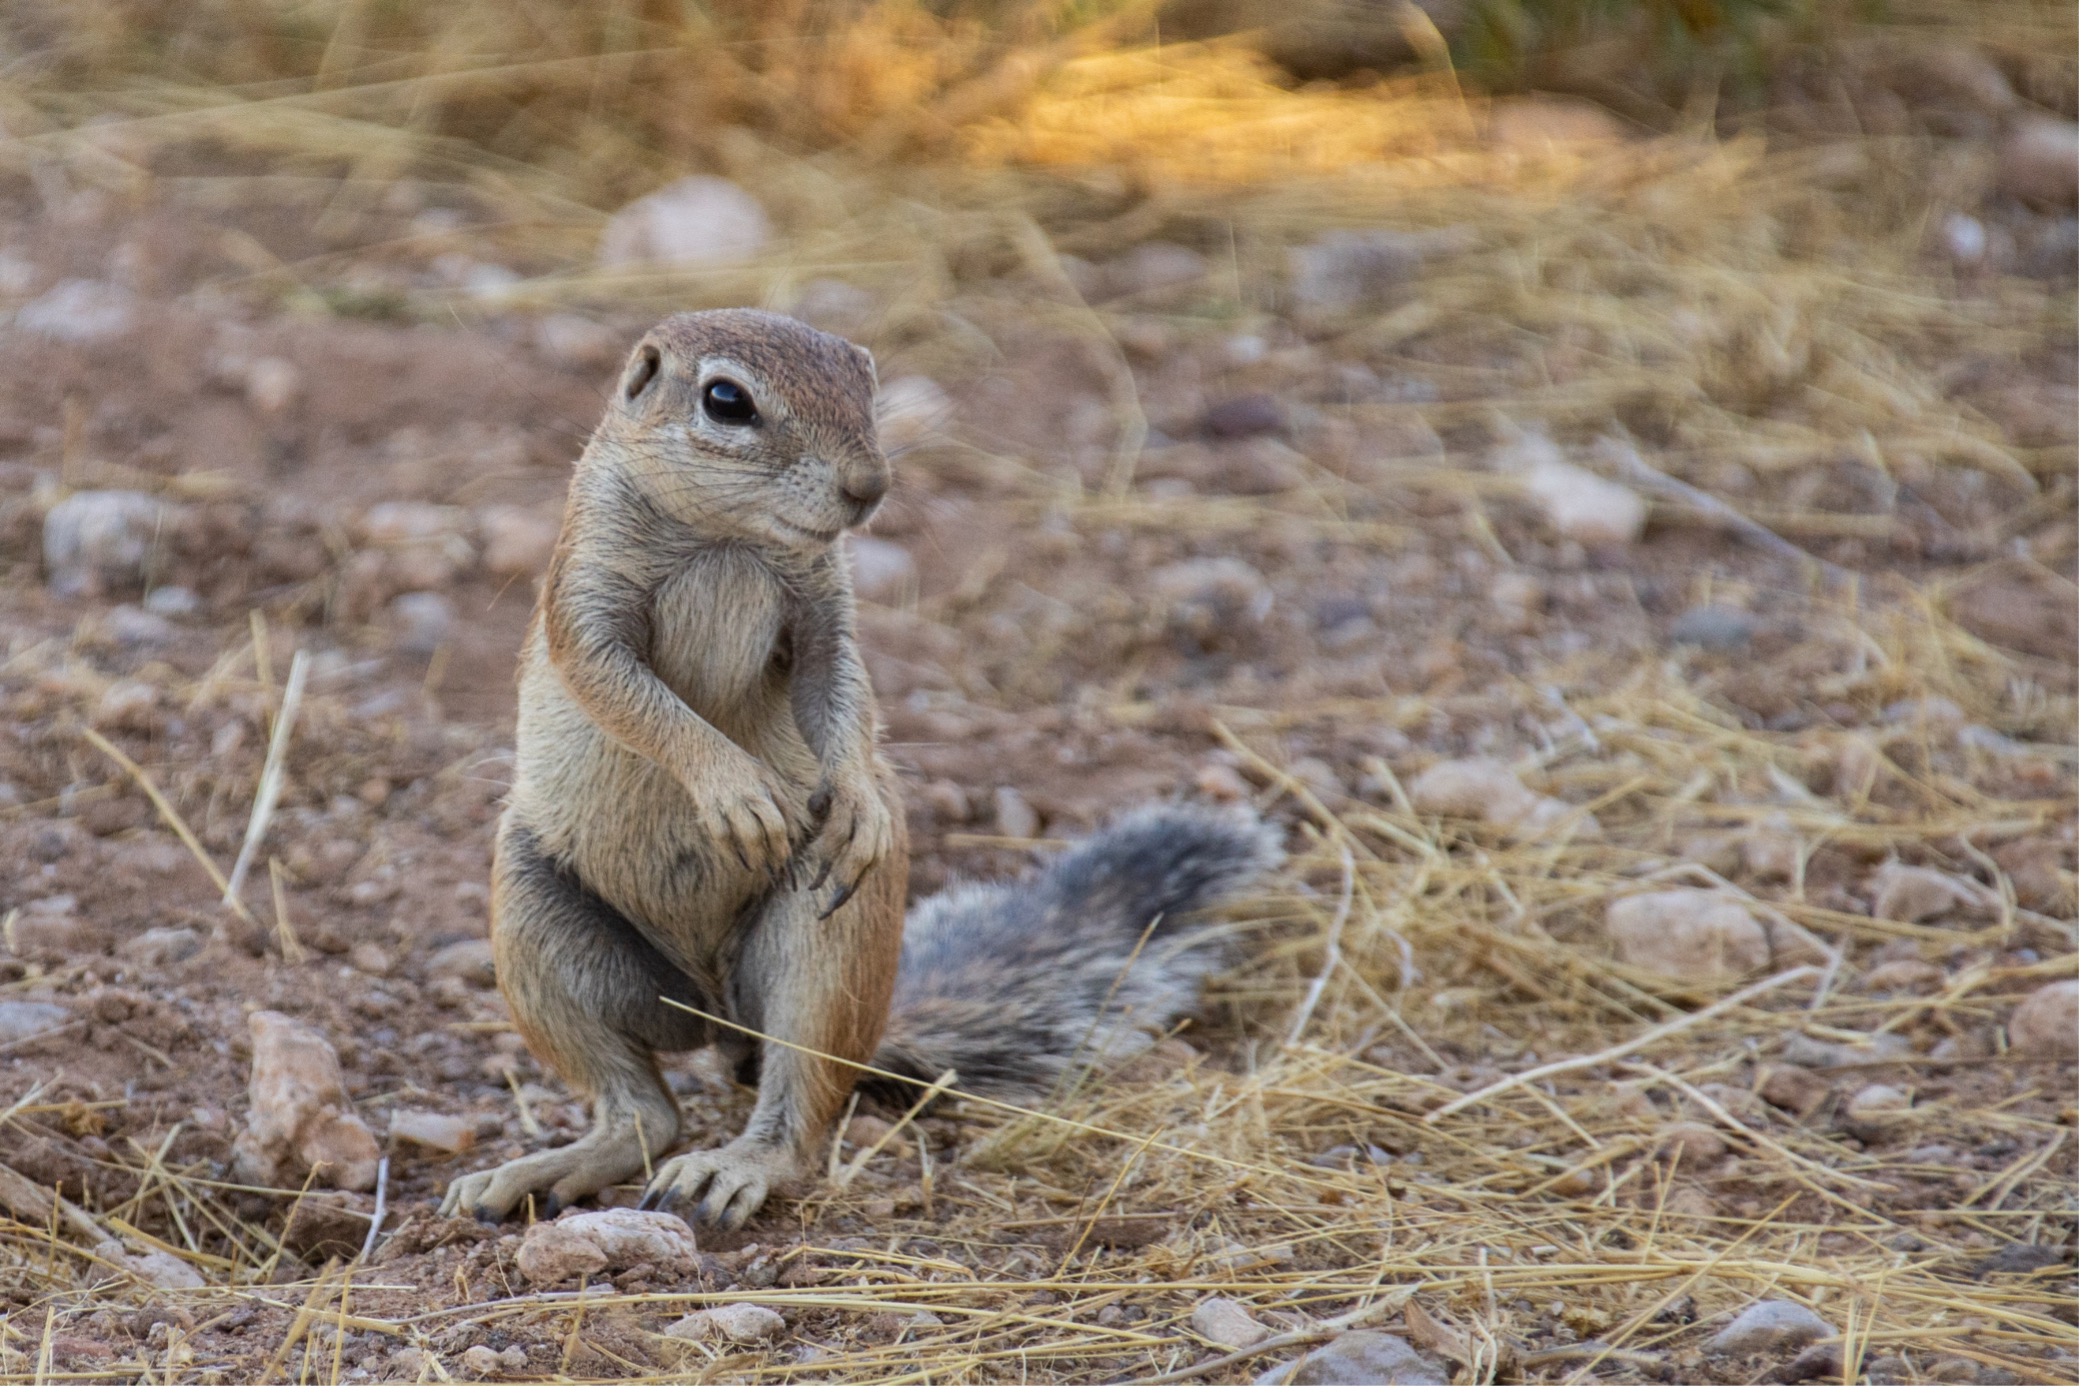 Erdhörnchen - Ground Squirrel